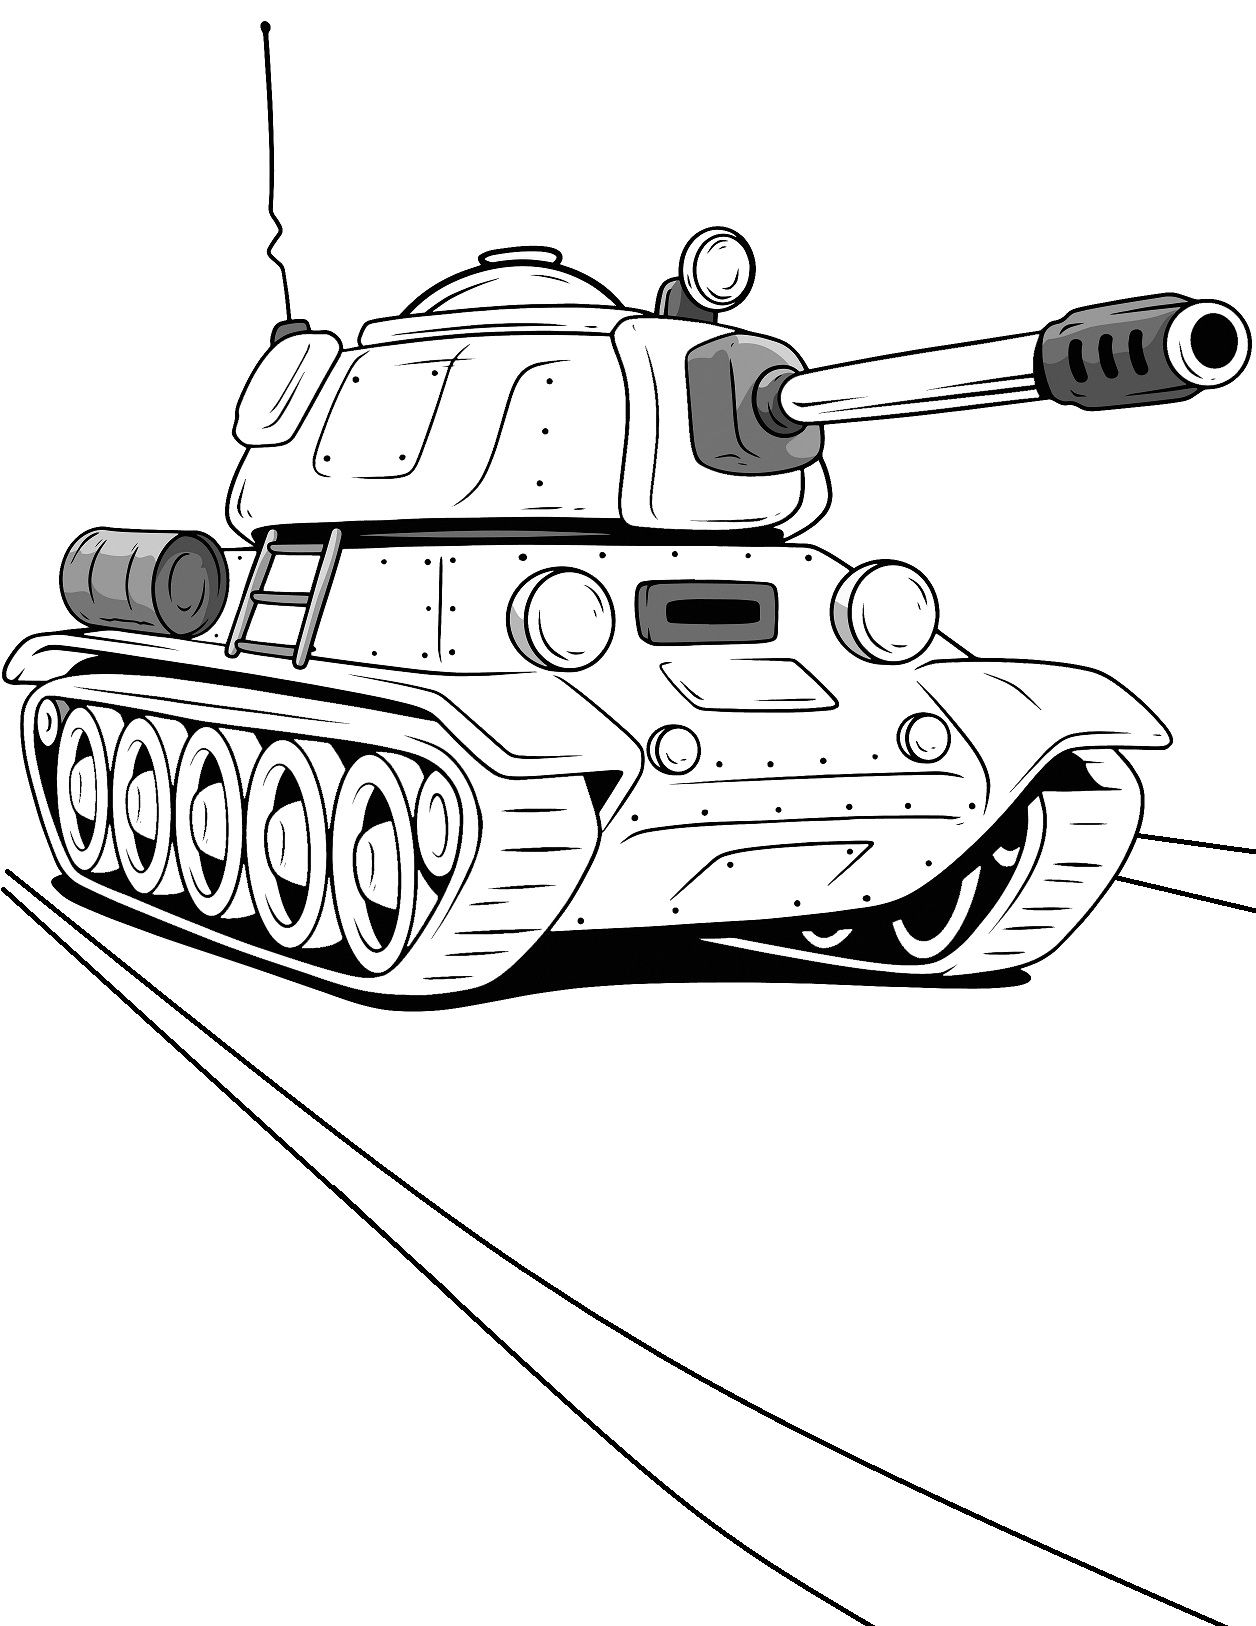 Hướng dẫn chi tiết cách vẽ xe tăng đơn giản với 9 bước cơ bản